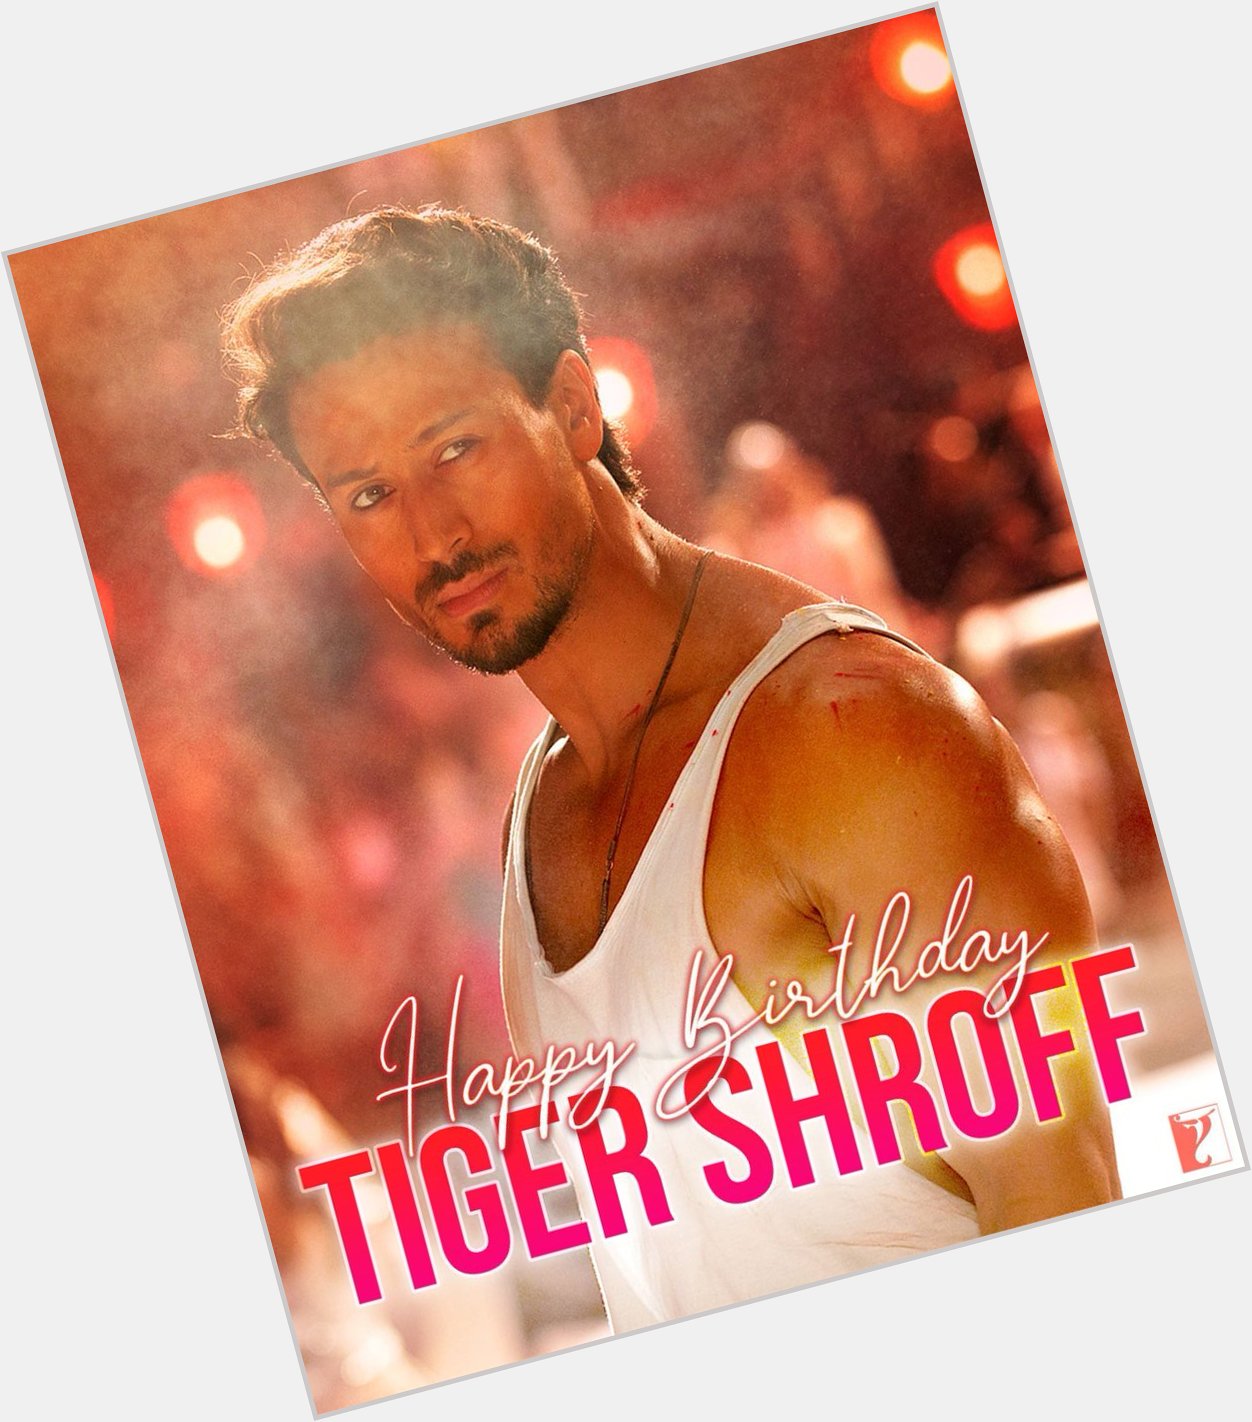 Happy birthday to tiger shroff 